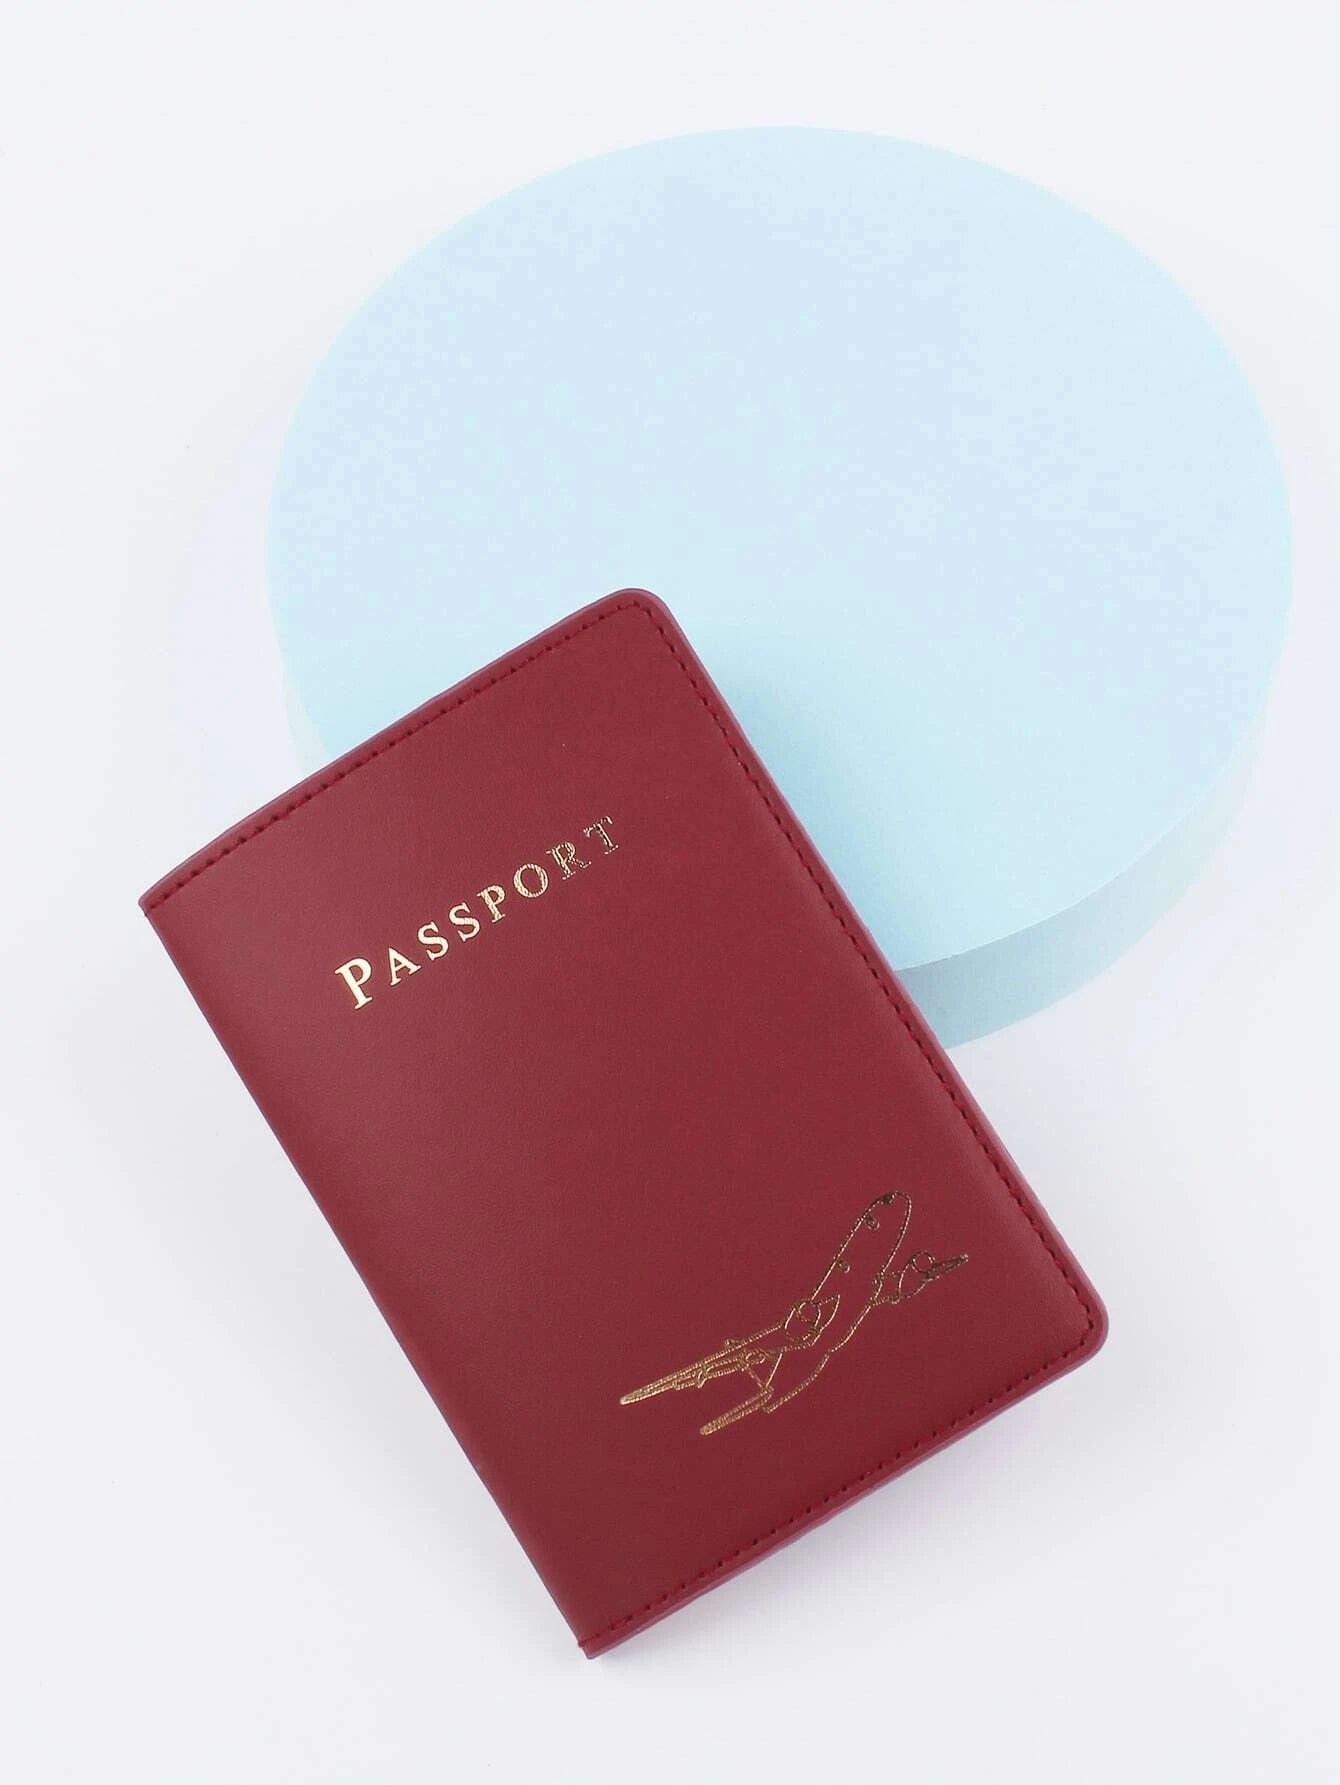 Shein Plane & Letter Graphic Passport Case